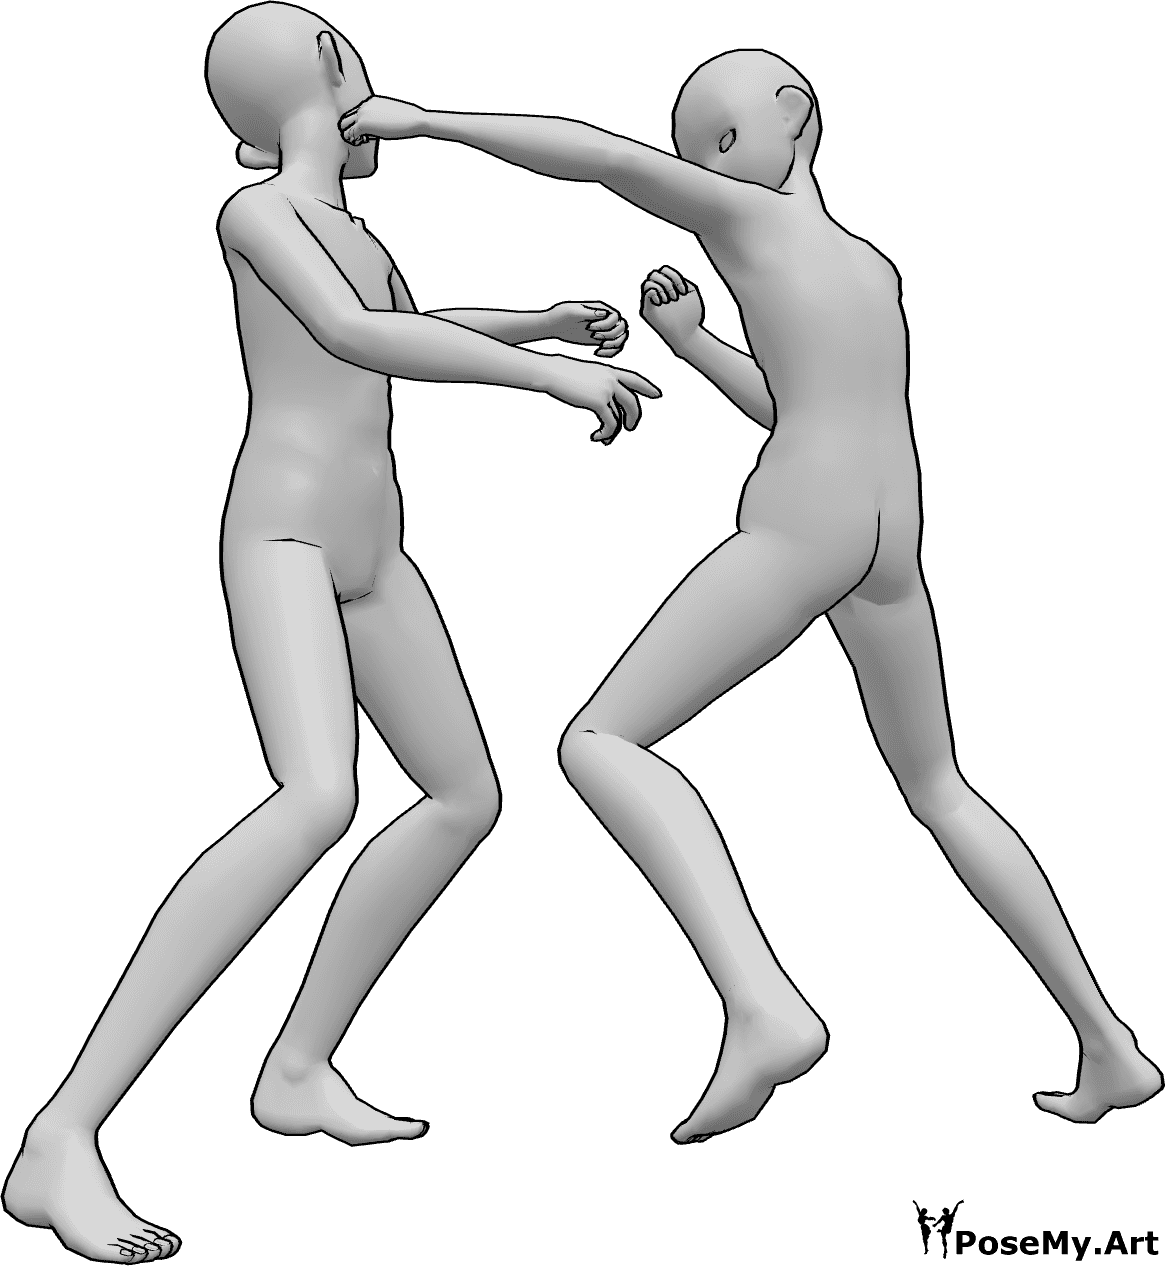 Referencia de poses- Postura anime para golpear la cabeza - Dos machos anime se pelean, uno de ellos golpea al otro en la cabeza